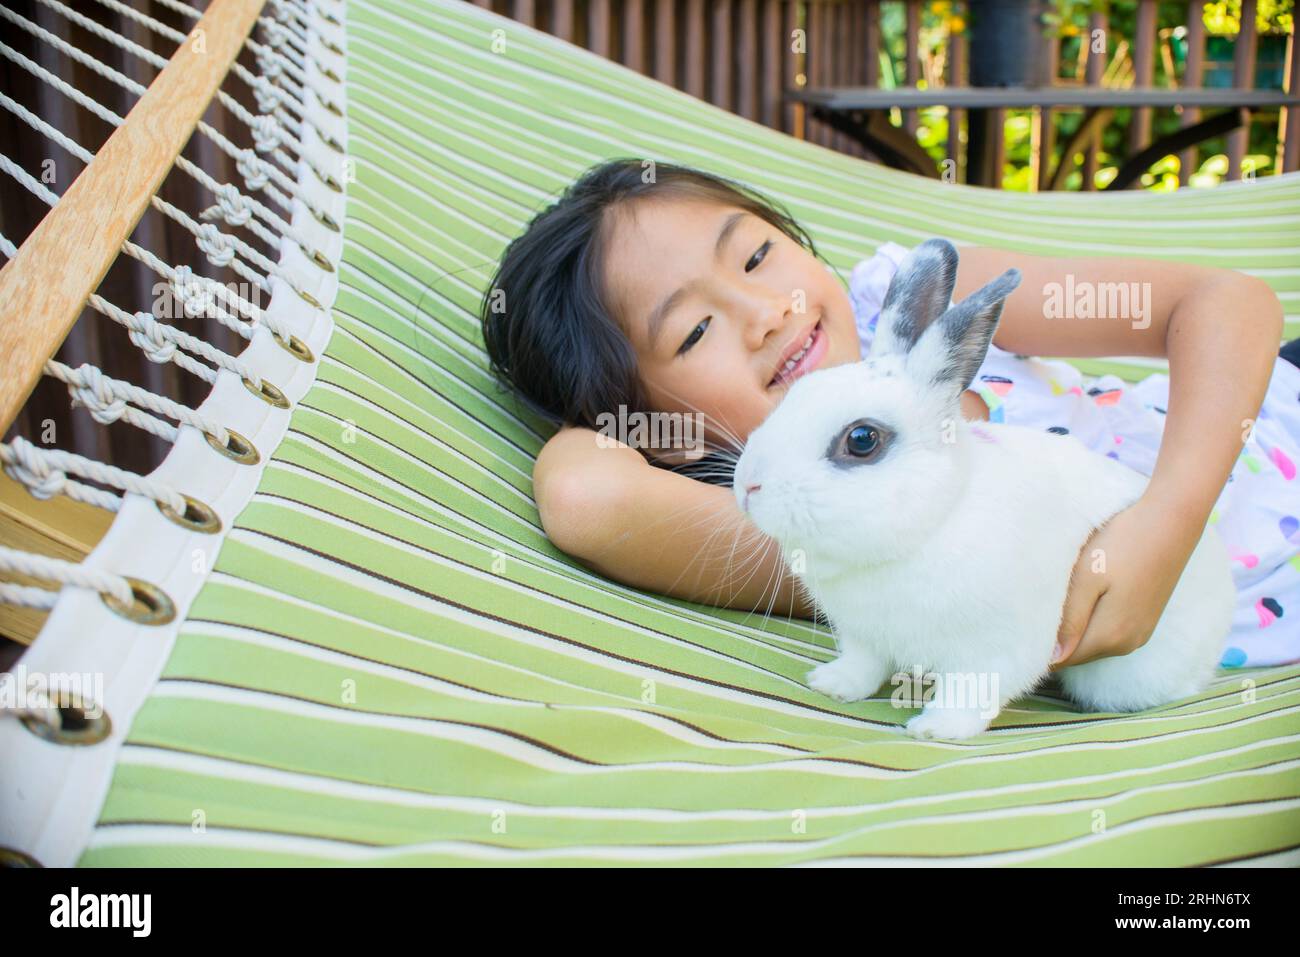 Vietnamita, americana, ragazza di 7 anni che si esibisce con i suoi abiti preferiti Foto Stock